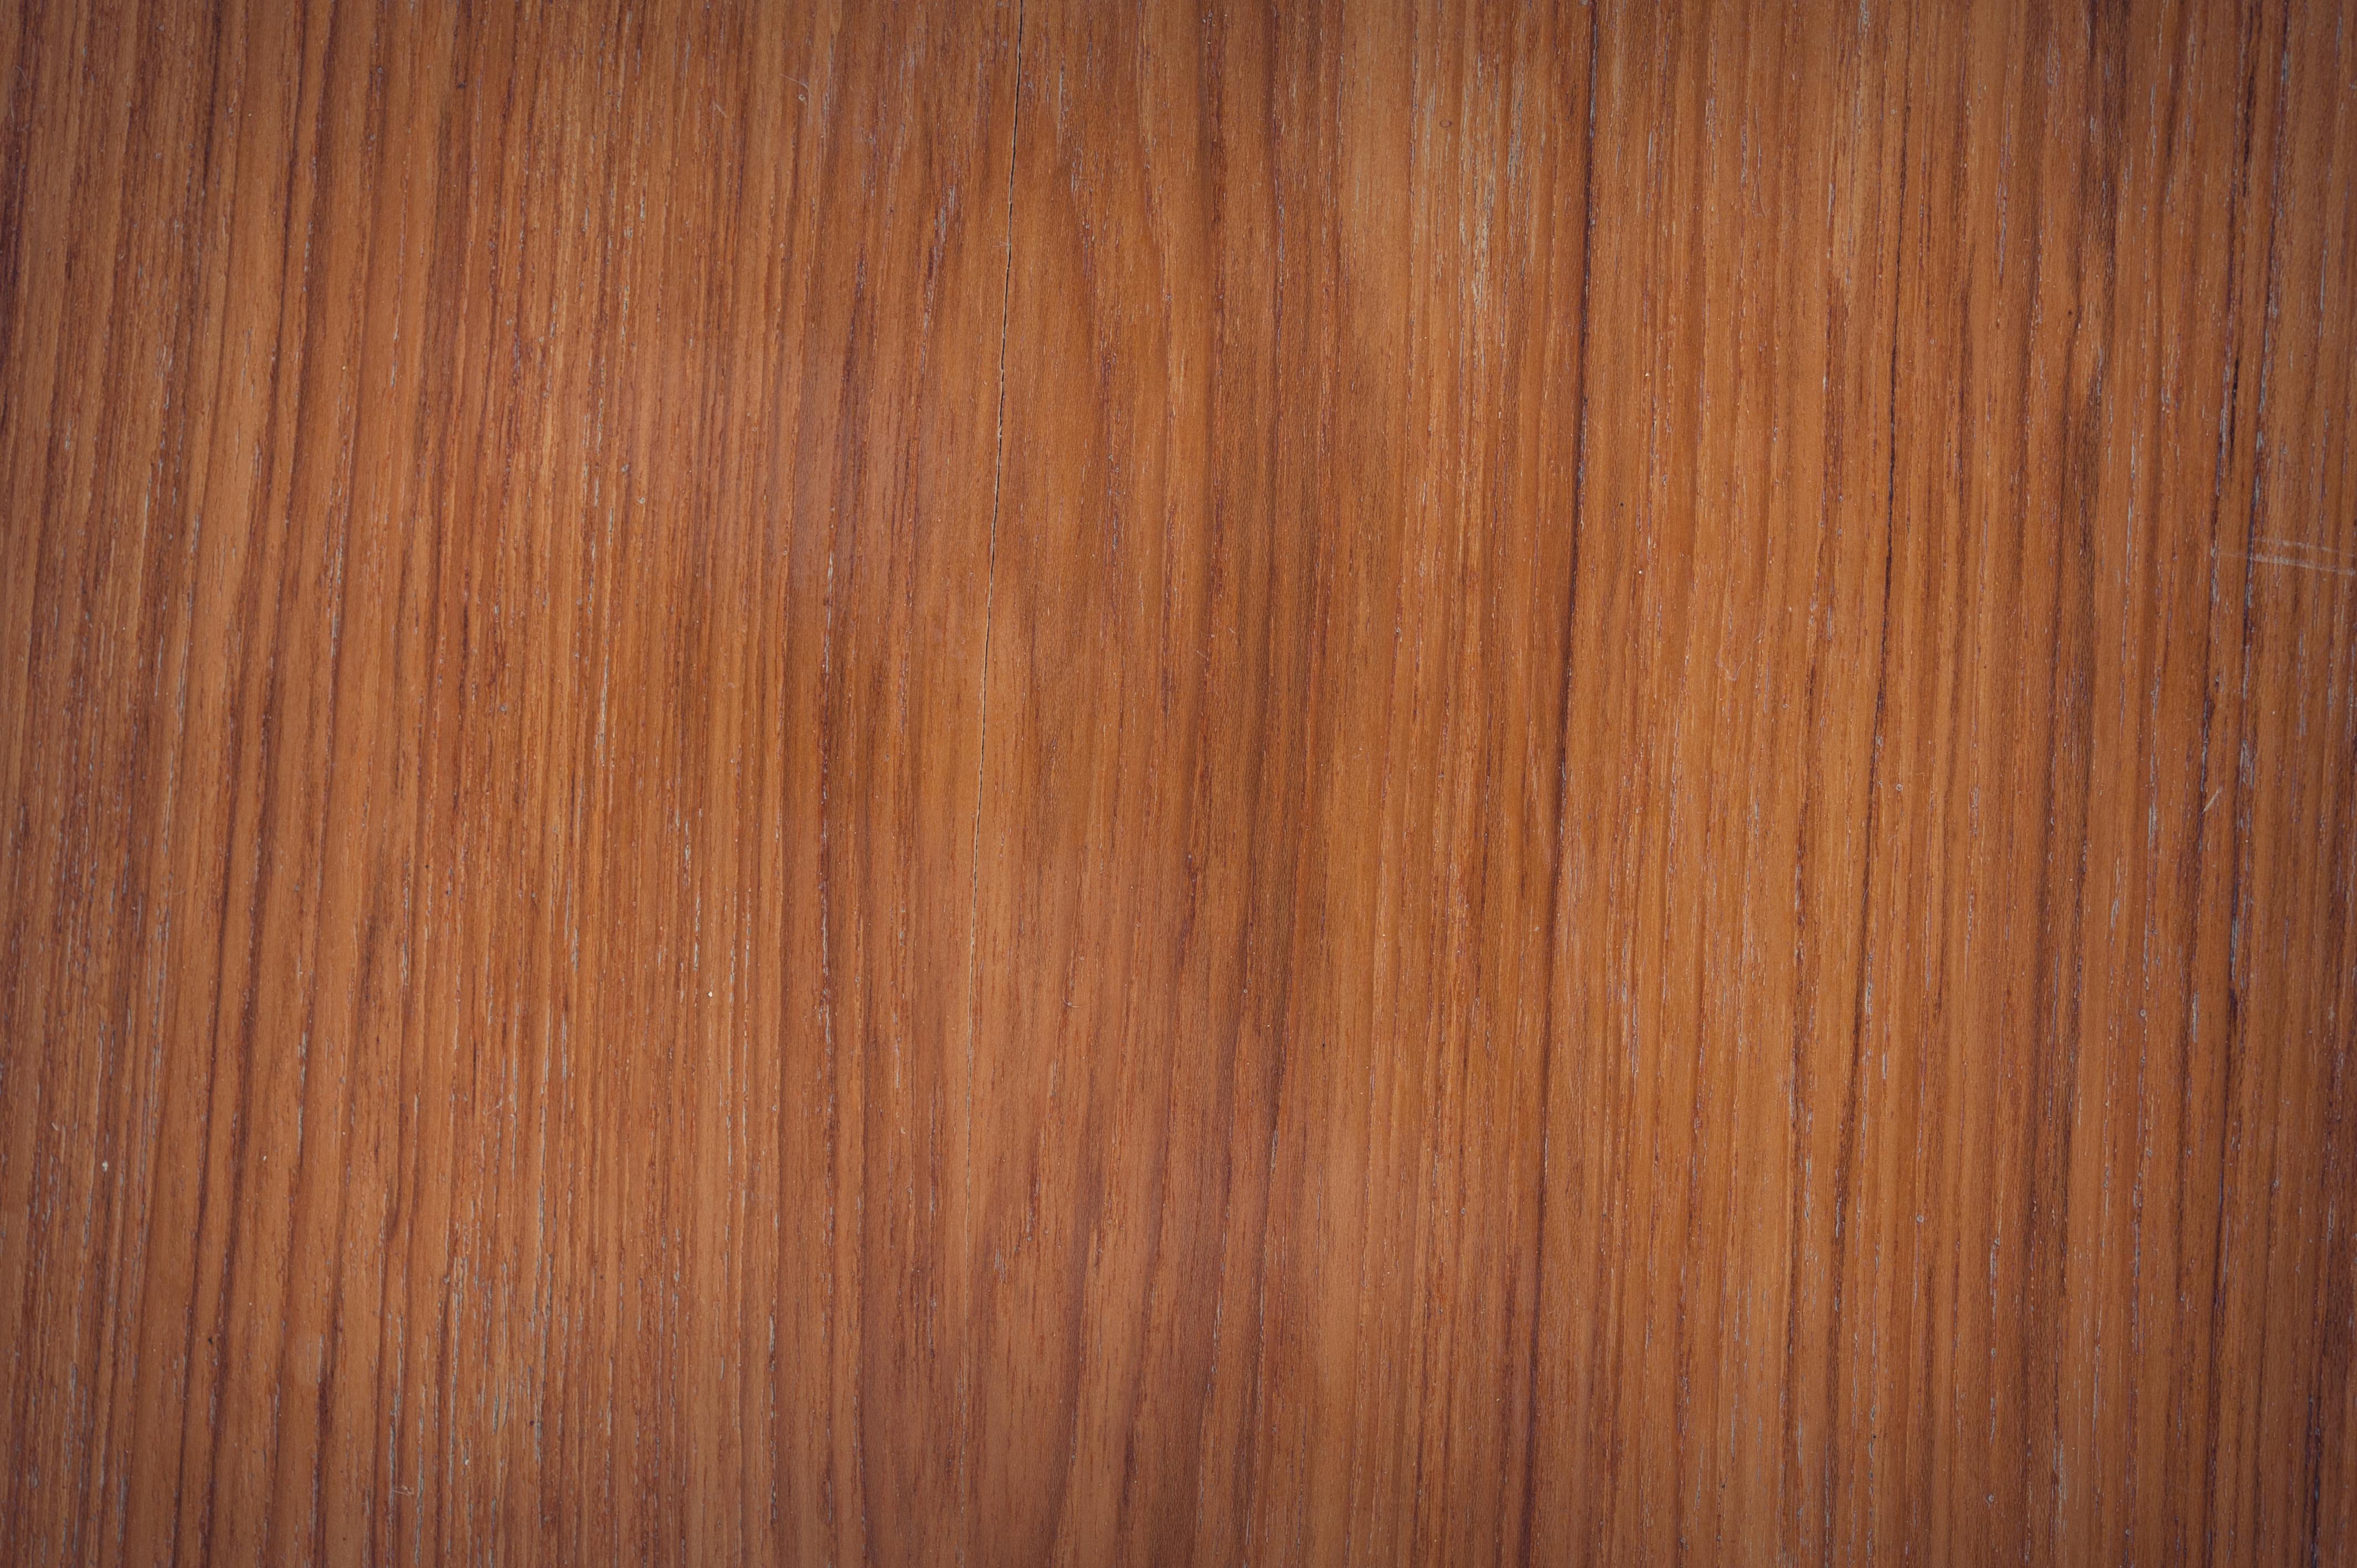 Khi nói về thiết kế, texture gỗ là một trong những yếu tố quan trọng trong việc tạo nên vẻ đẹp tự nhiên. Hãy khám phá những hình ảnh texture gỗ để tìm hiểu về độ bền, tính chất và màu sắc độc đáo của loại vật liệu đầy thu hút này.